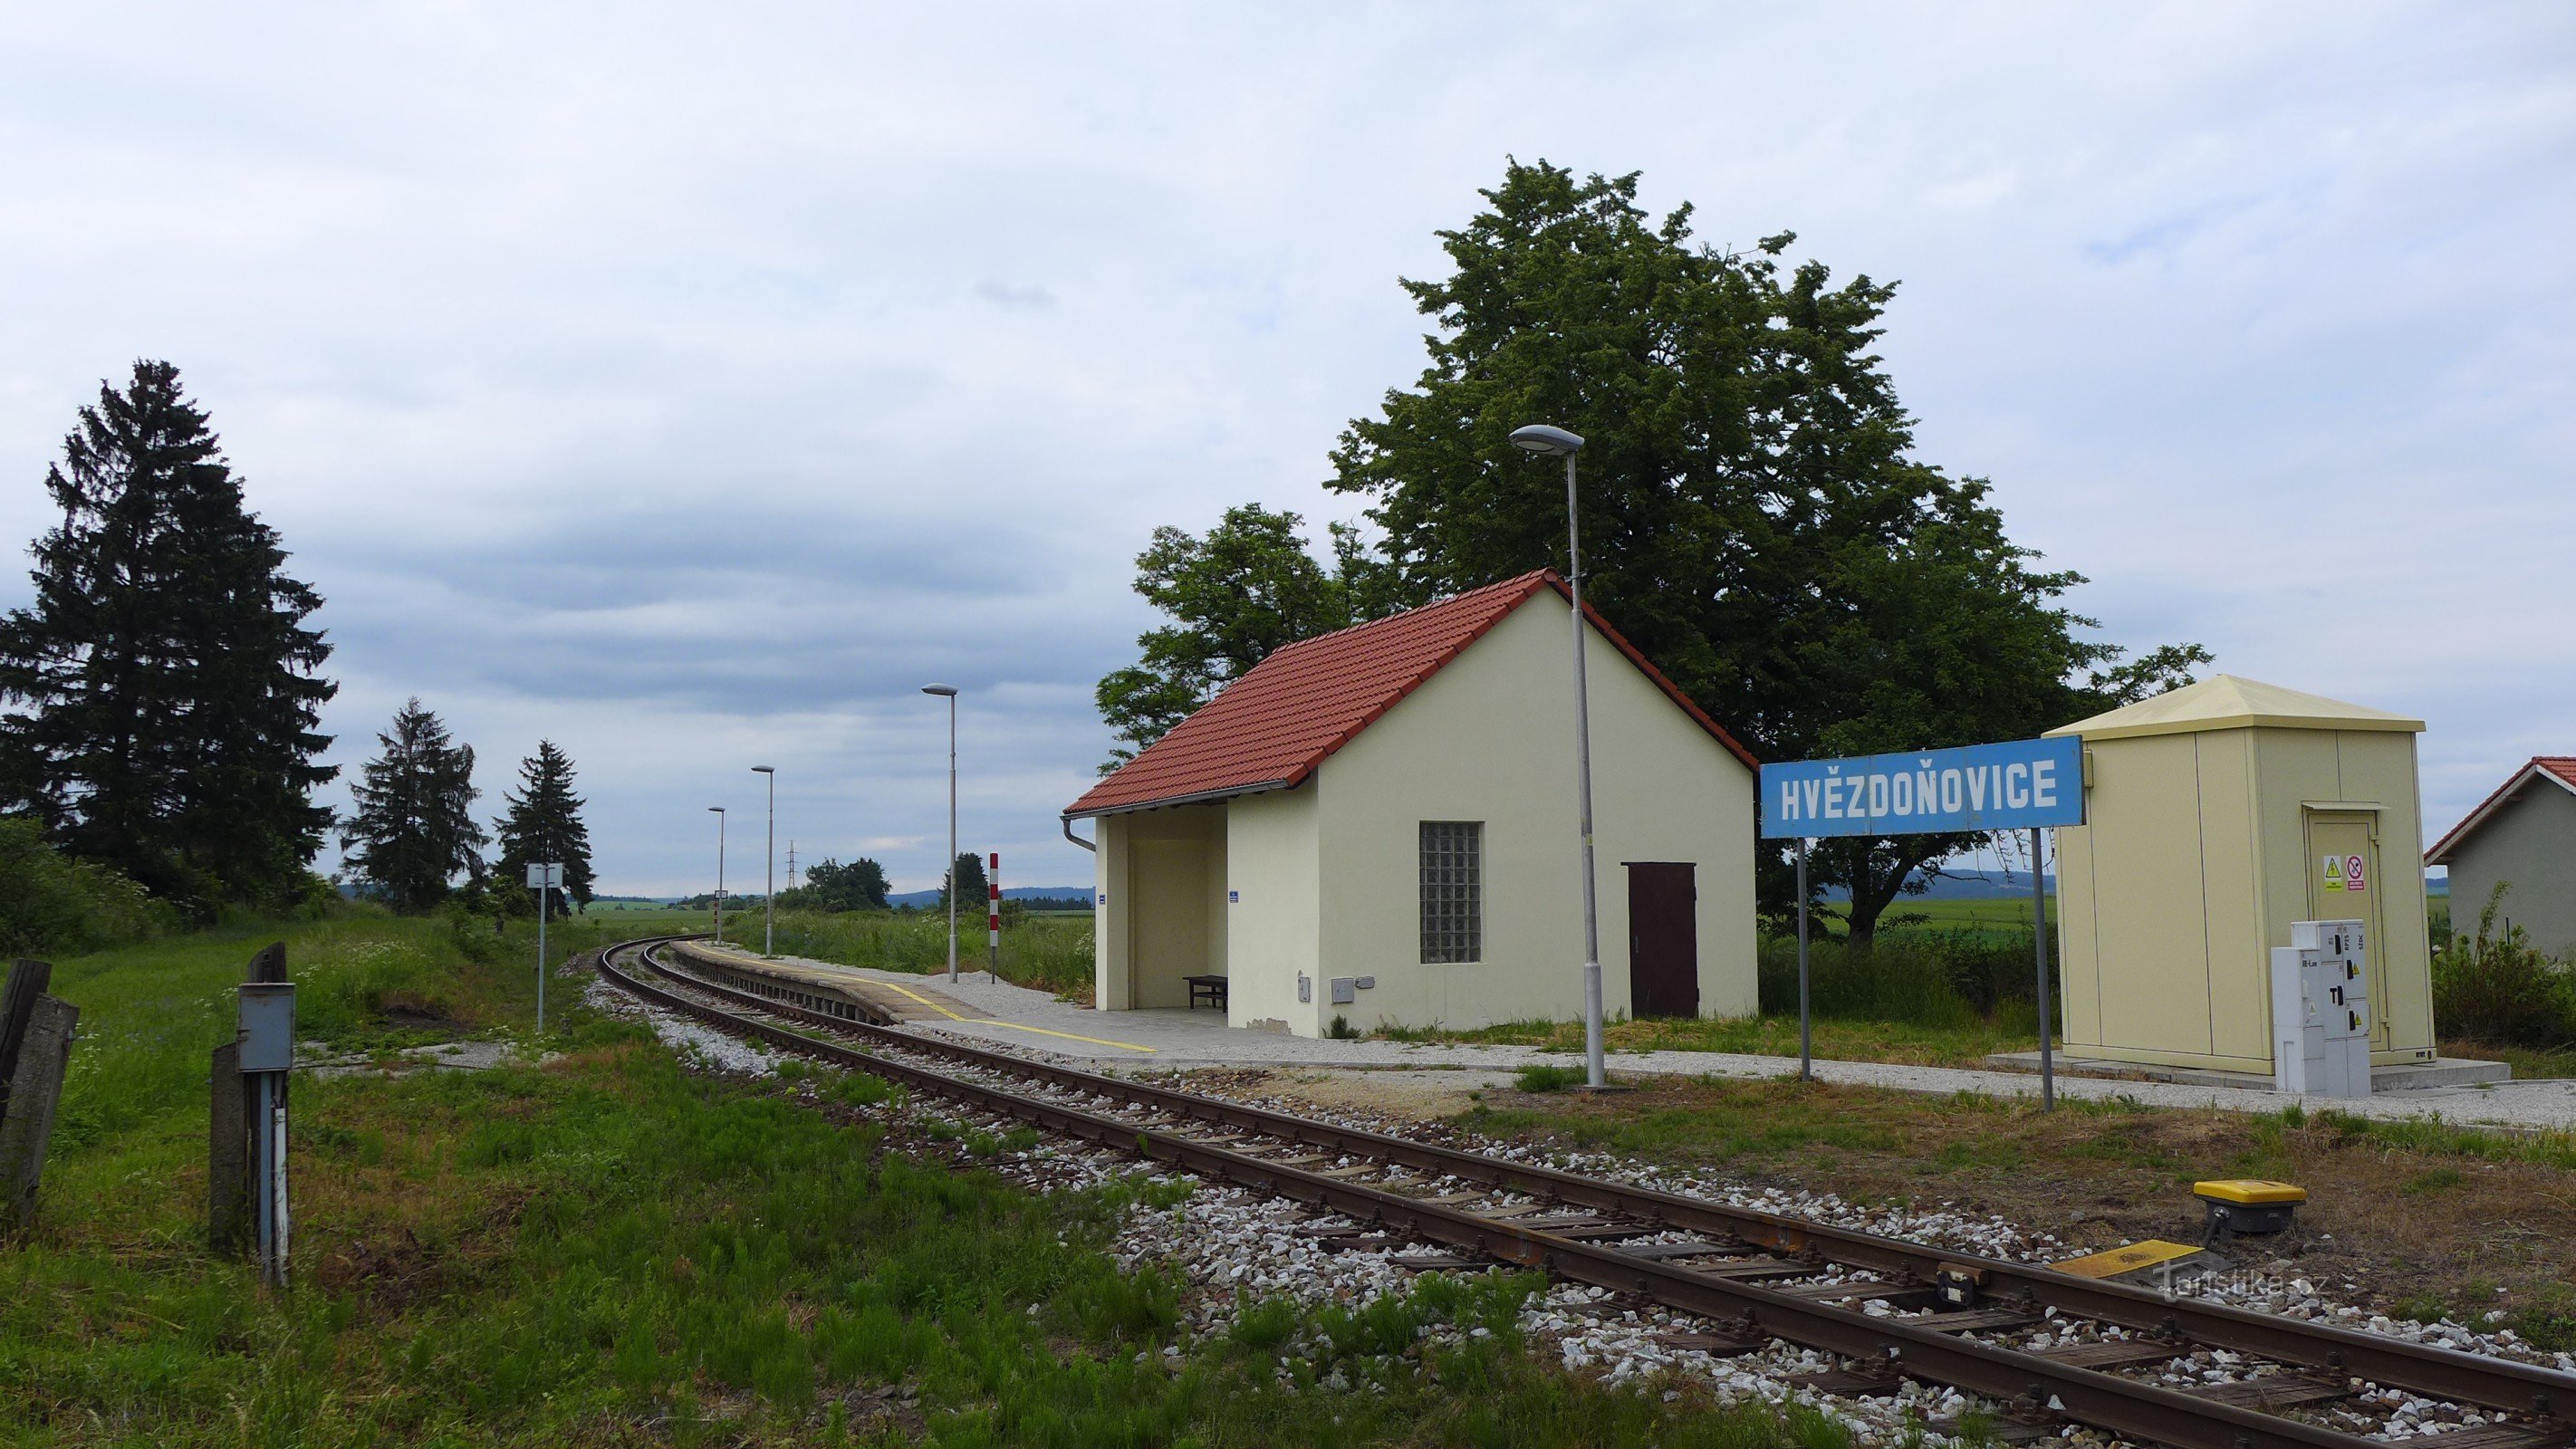 Гвездоновице - железнодорожная станция